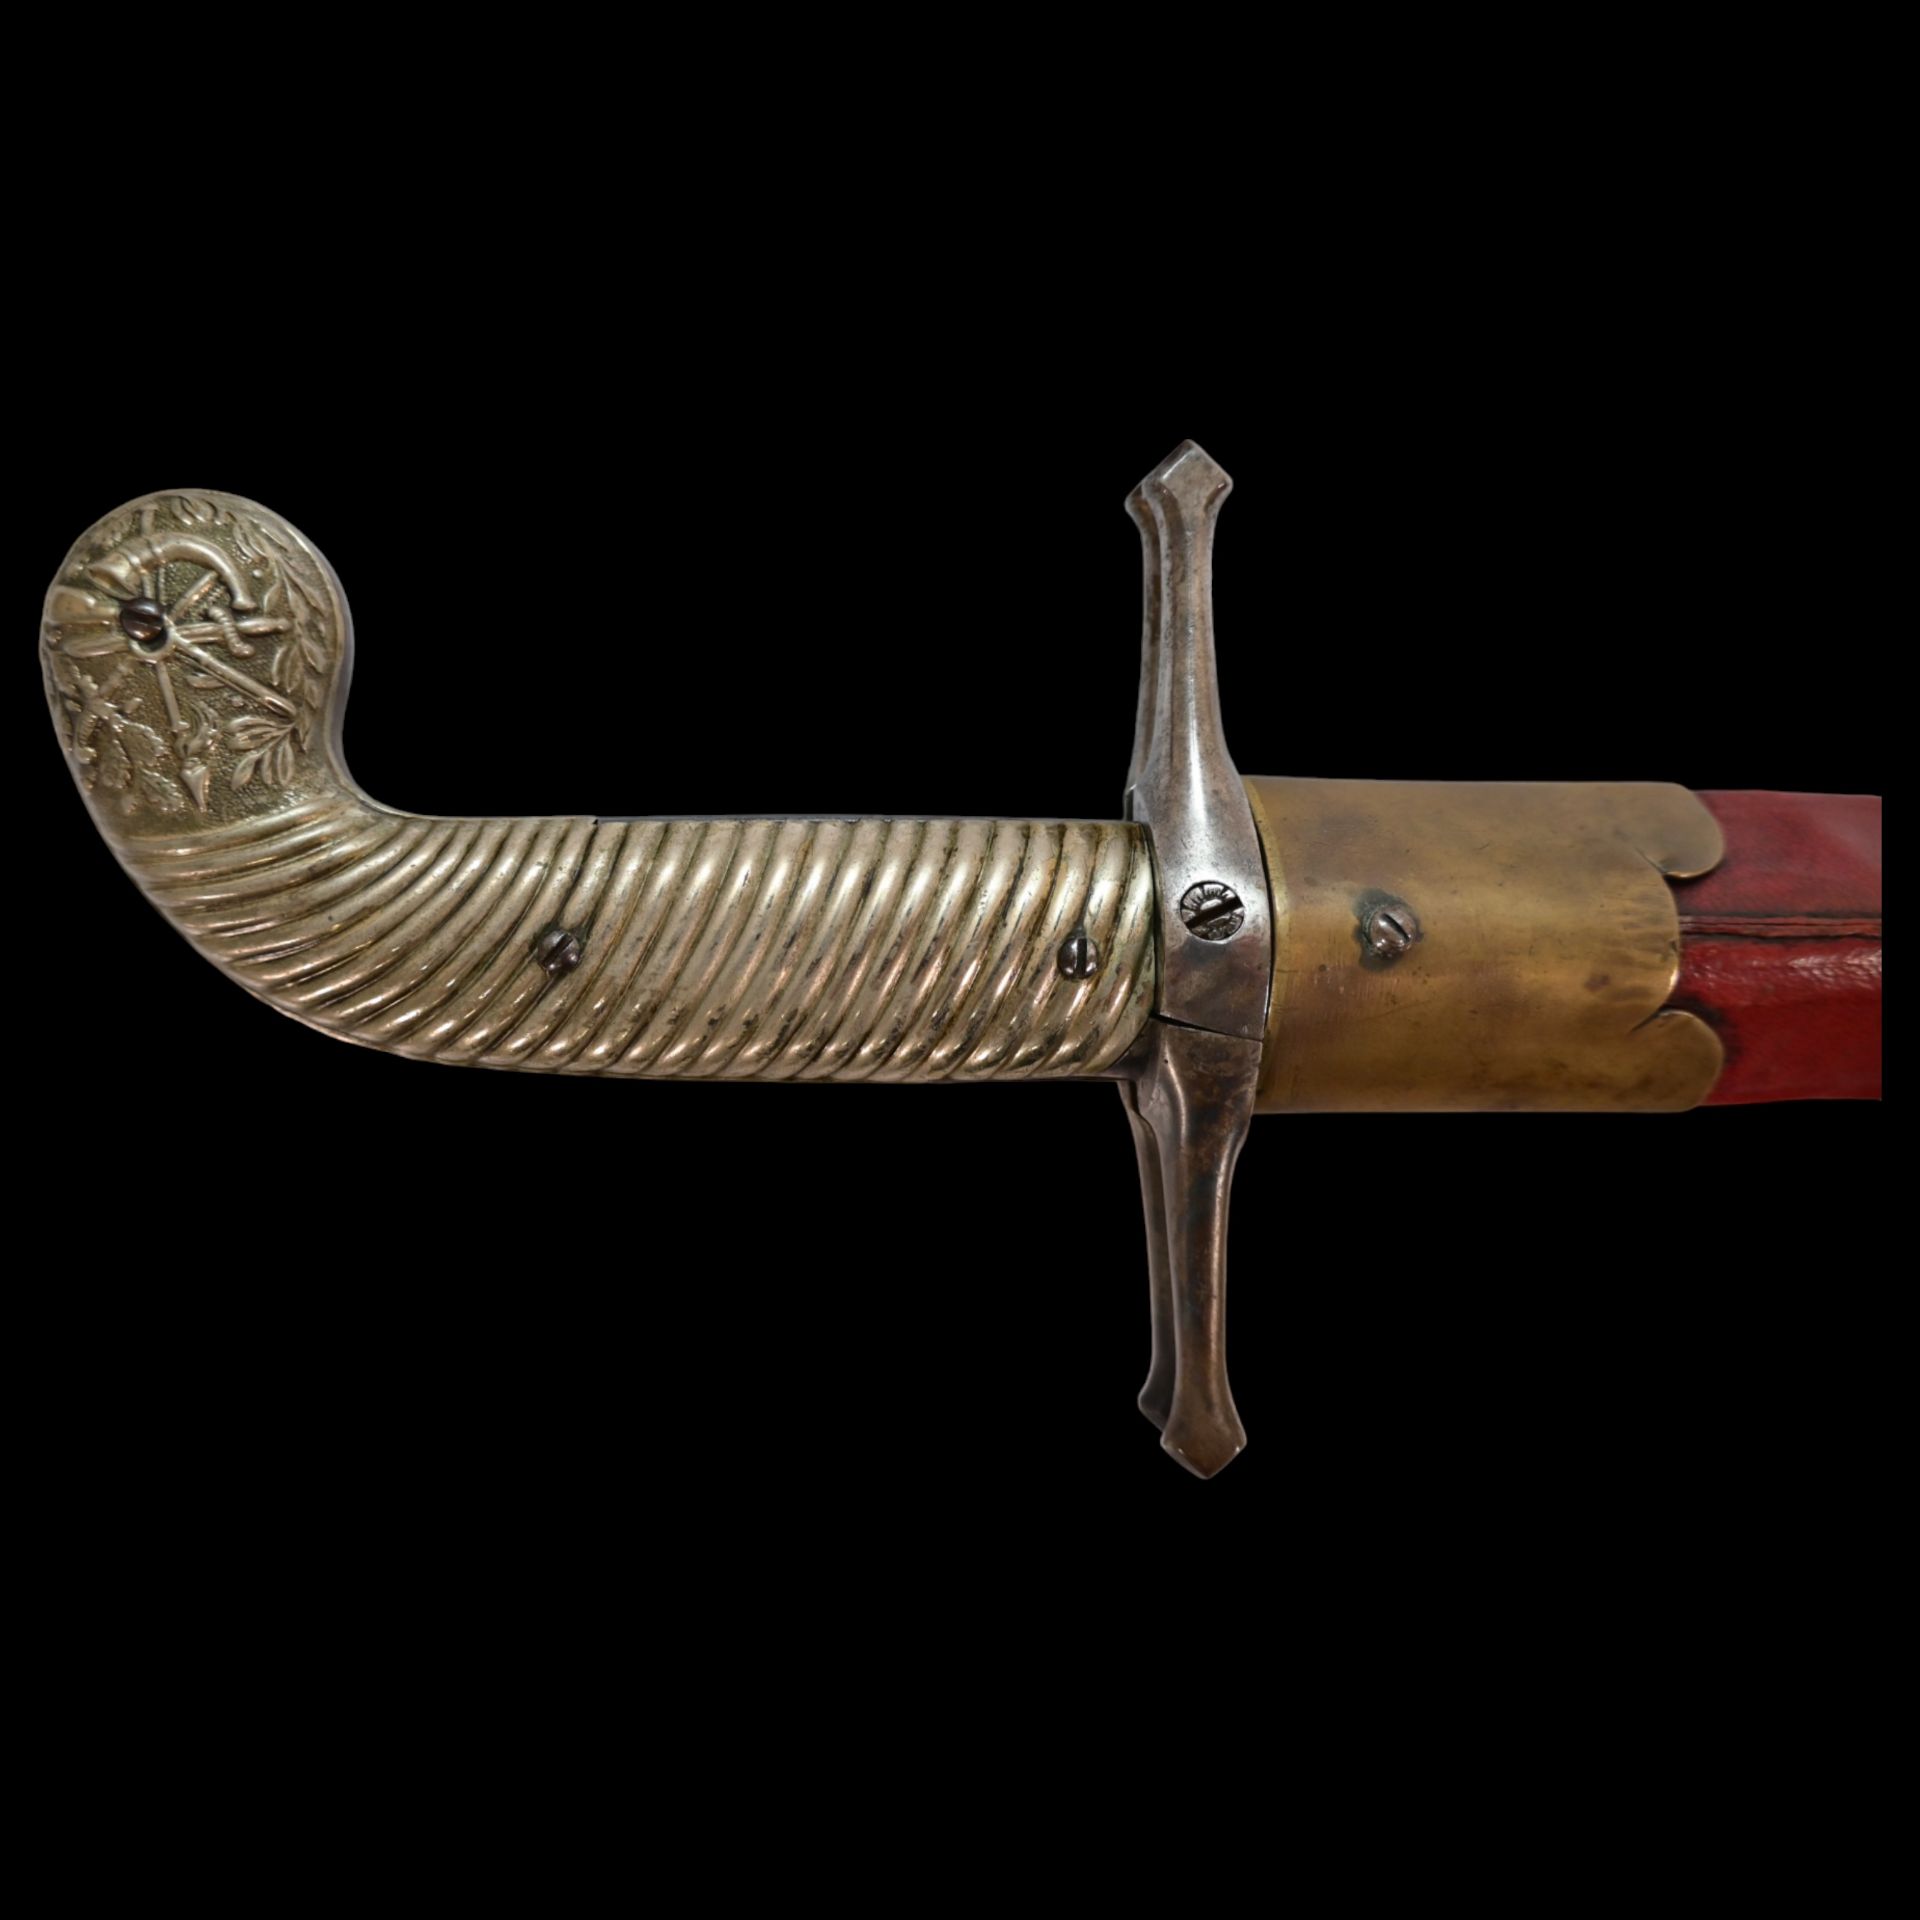 French D.B Dumonthier Dagger, Percussion Double Barrel Pistol, circa 1855-60. - Bild 6 aus 19